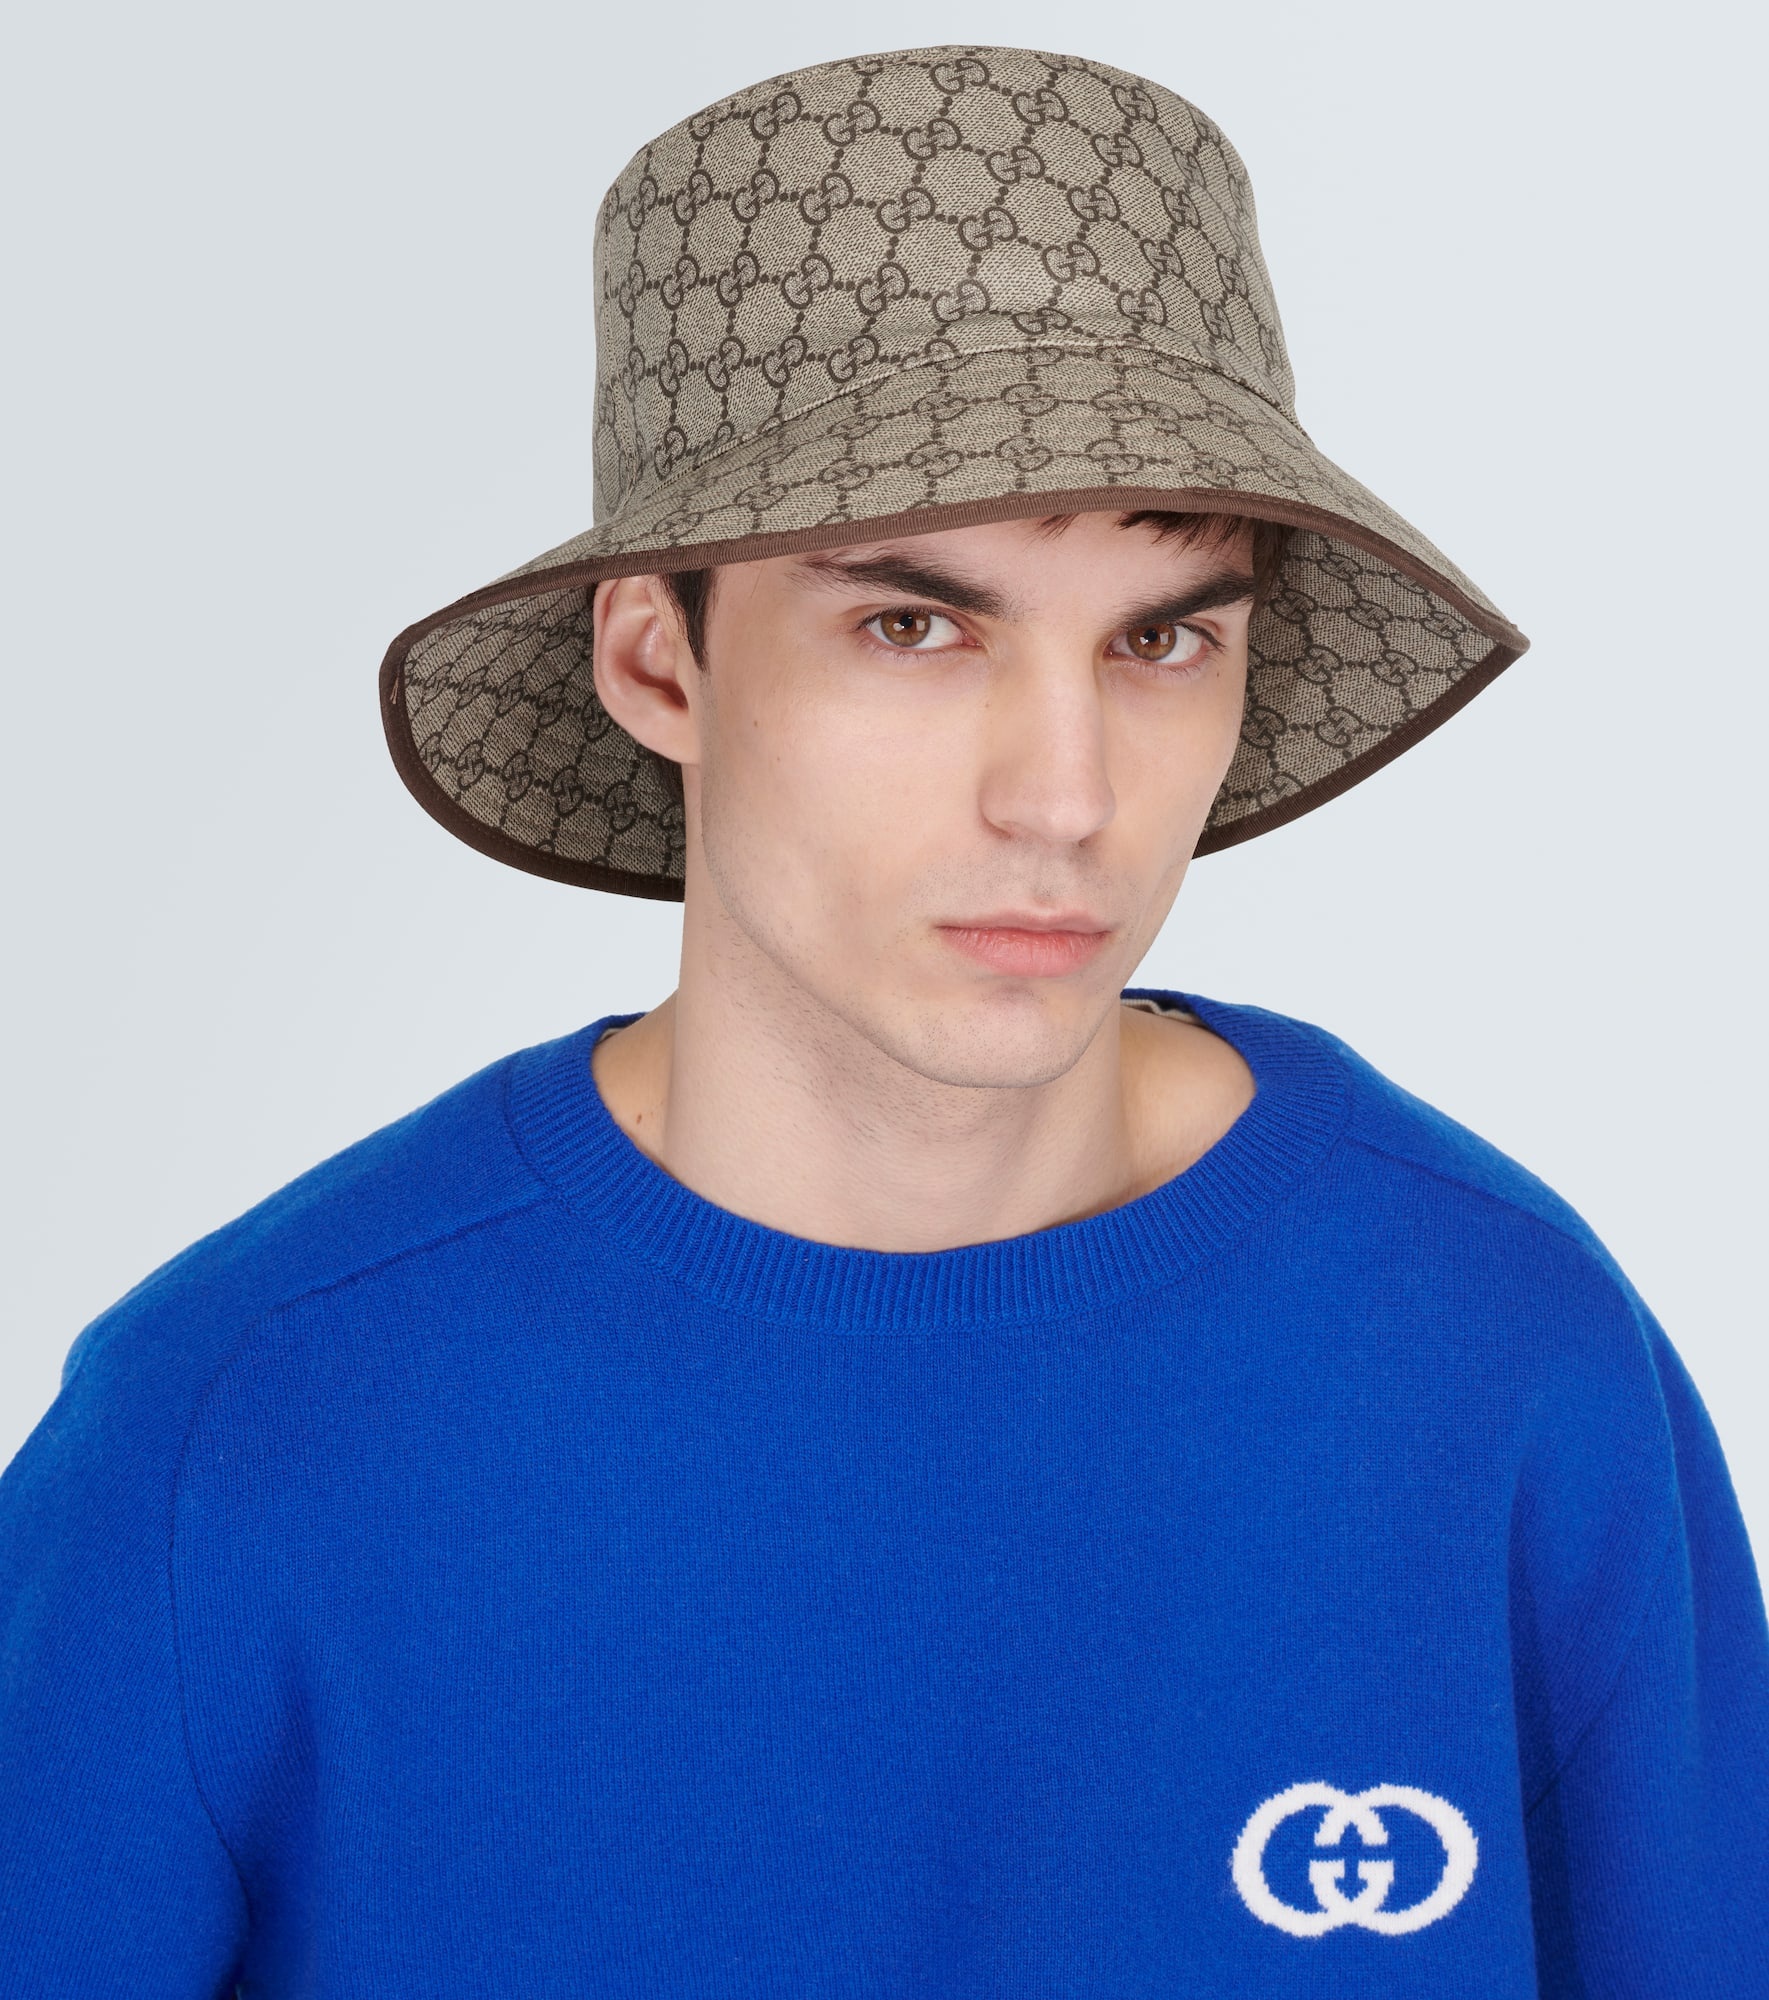 GG canvas bucket hat - 2